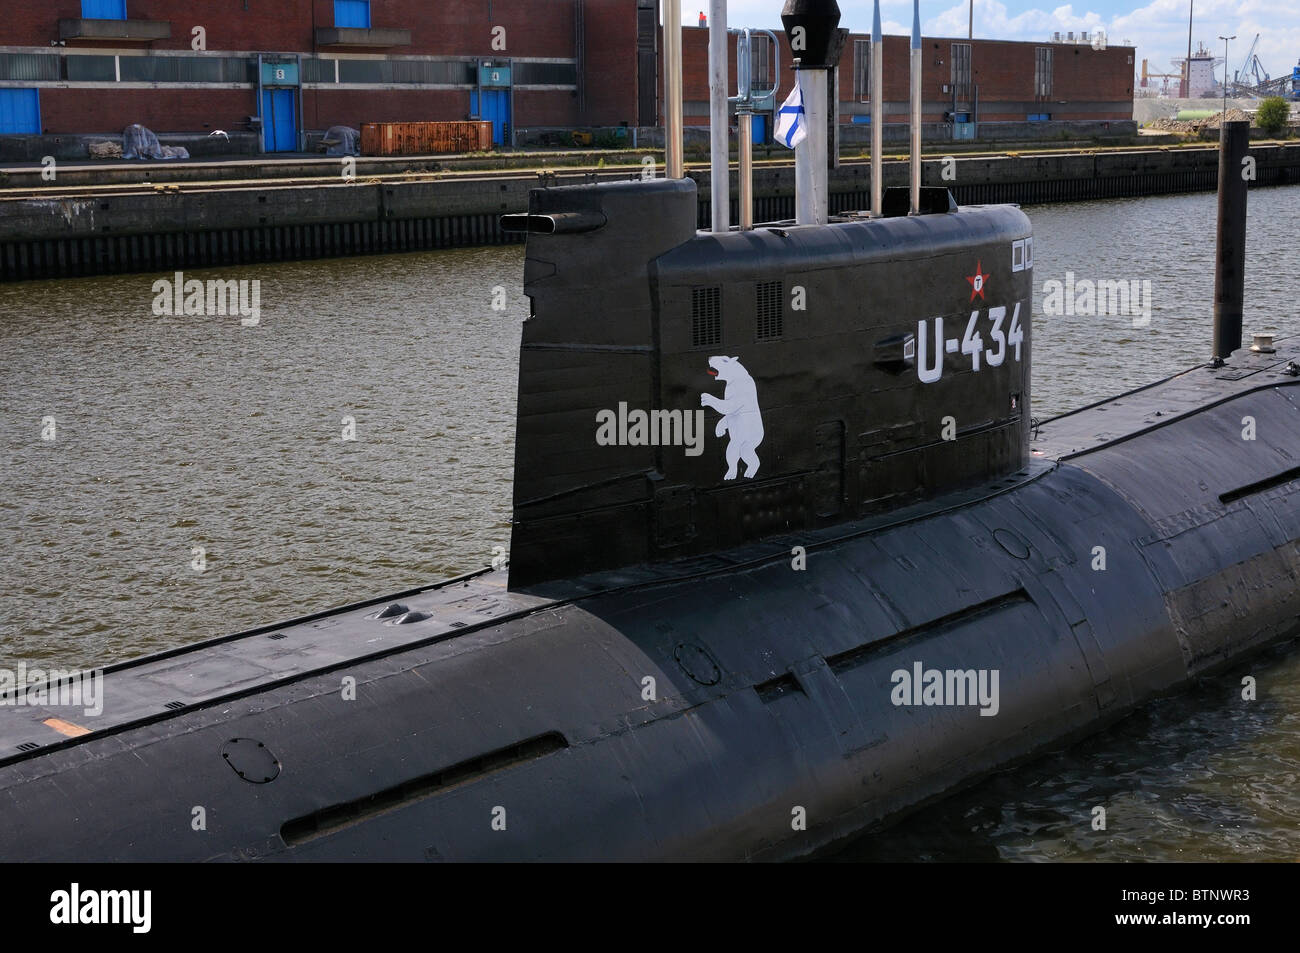 U-434-russischen Tango-Klasse (Projekt 641b) kalten Krieges u-Boot ist heute ein Museum an der Hafen Hamburg, Deutschland. Stockfoto